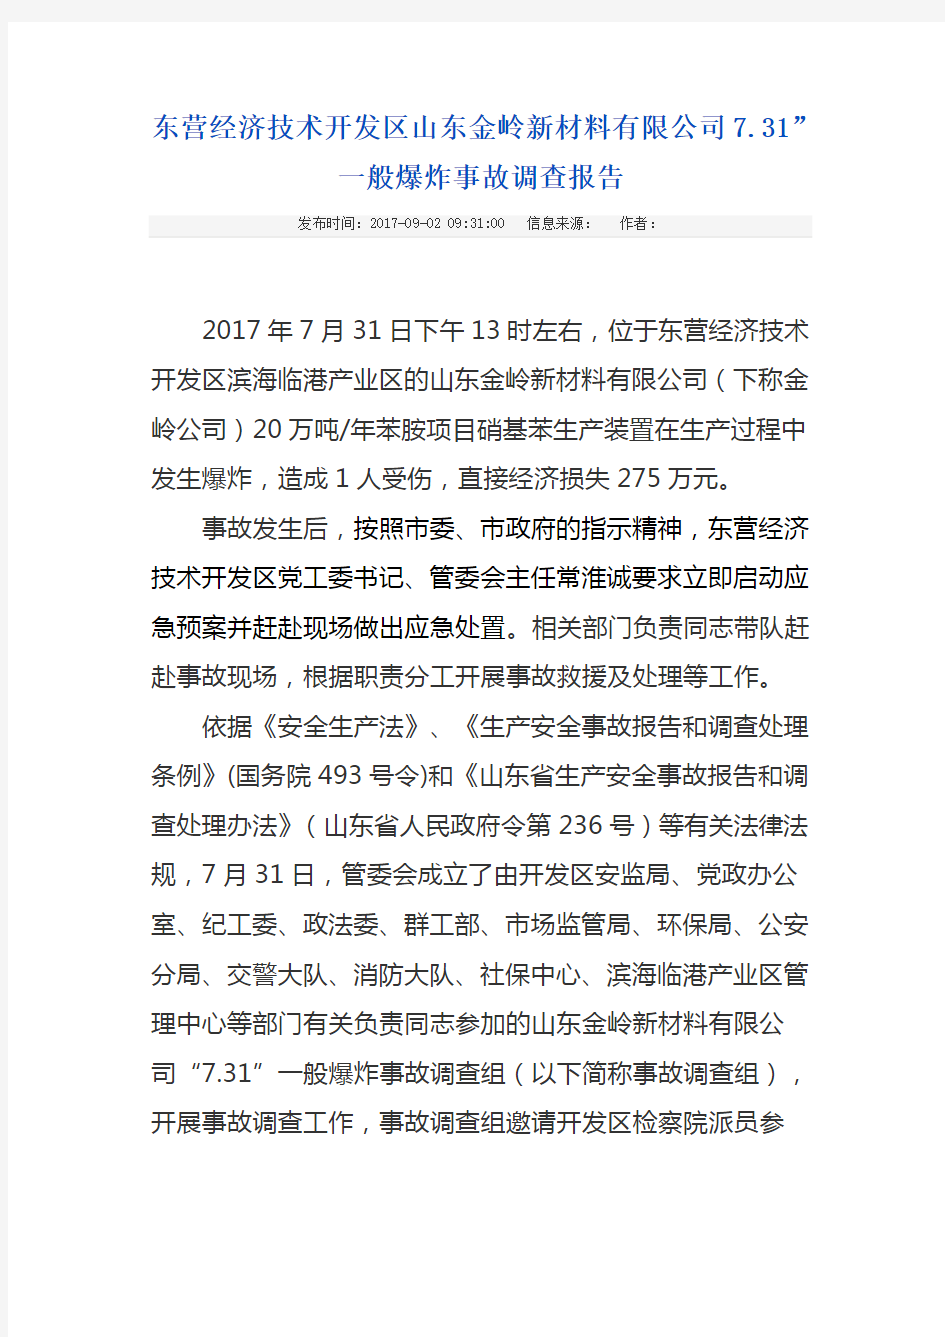 东营经济技术开发区山东金岭新材料有限公司7.31”一般爆炸事故调查报告